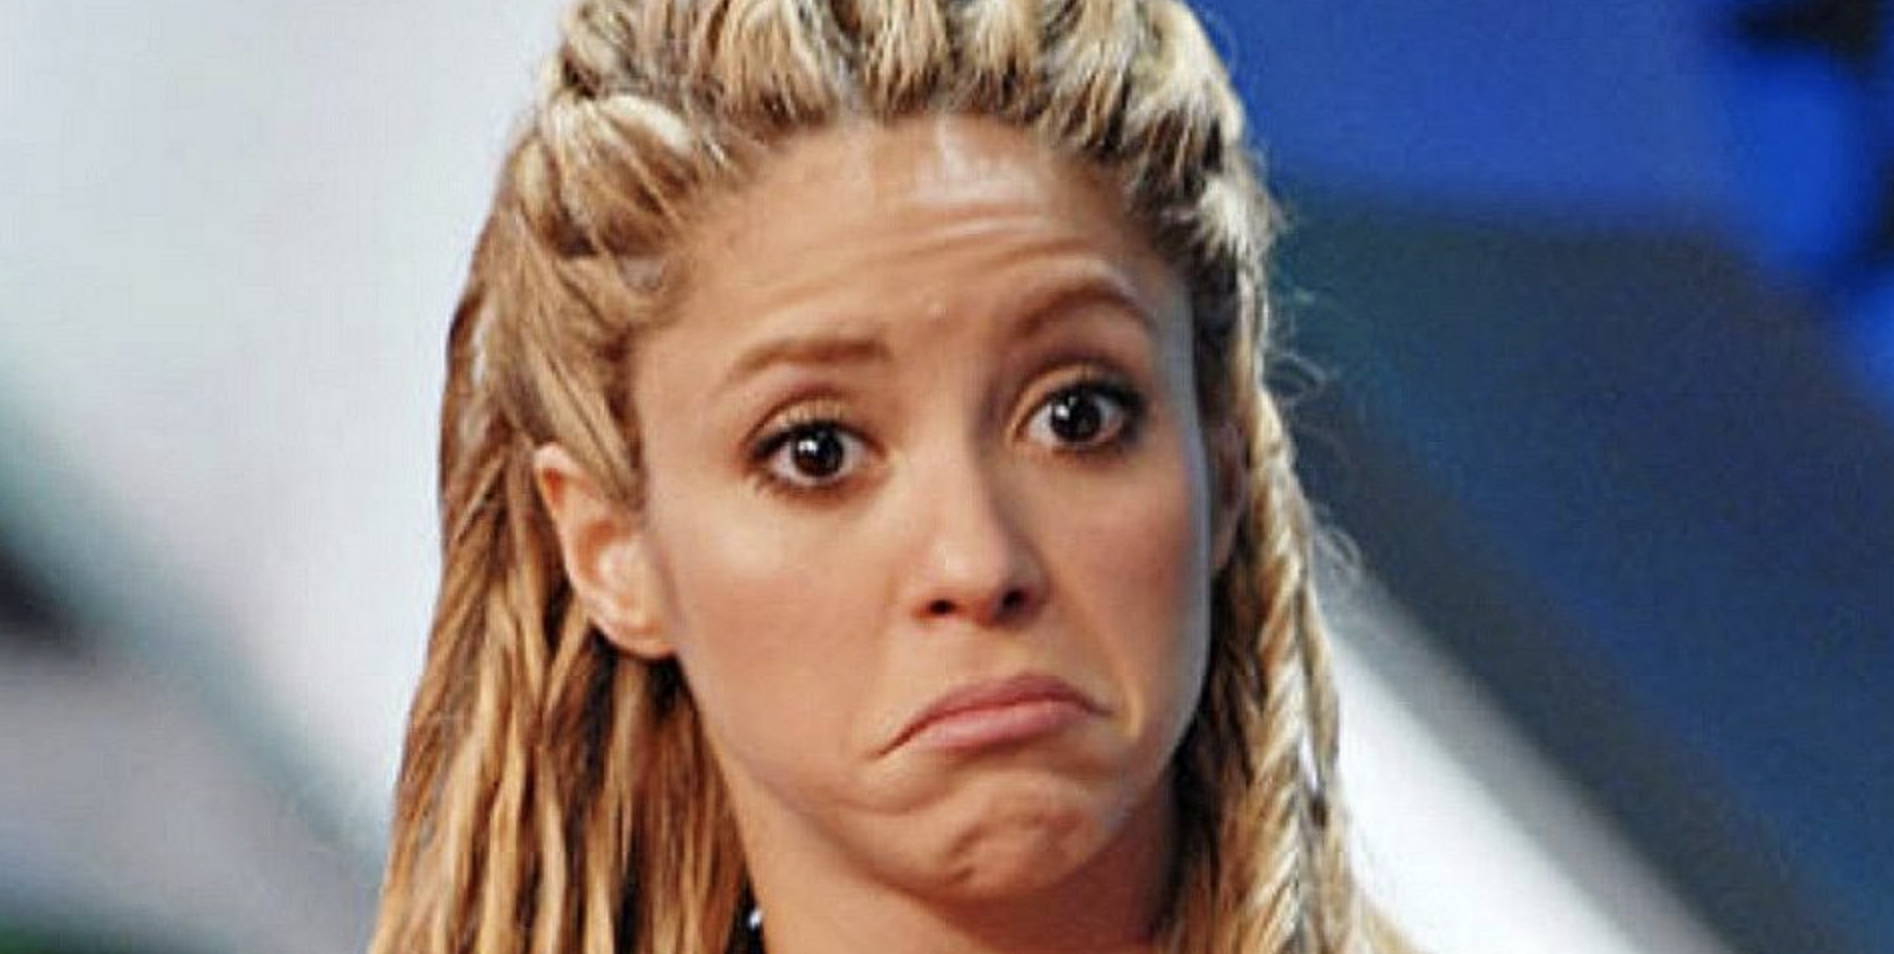 Shakira Continua En La Mira De Las Autoridades. La Cantante No La Tiene Nada Facil Con La Justicia